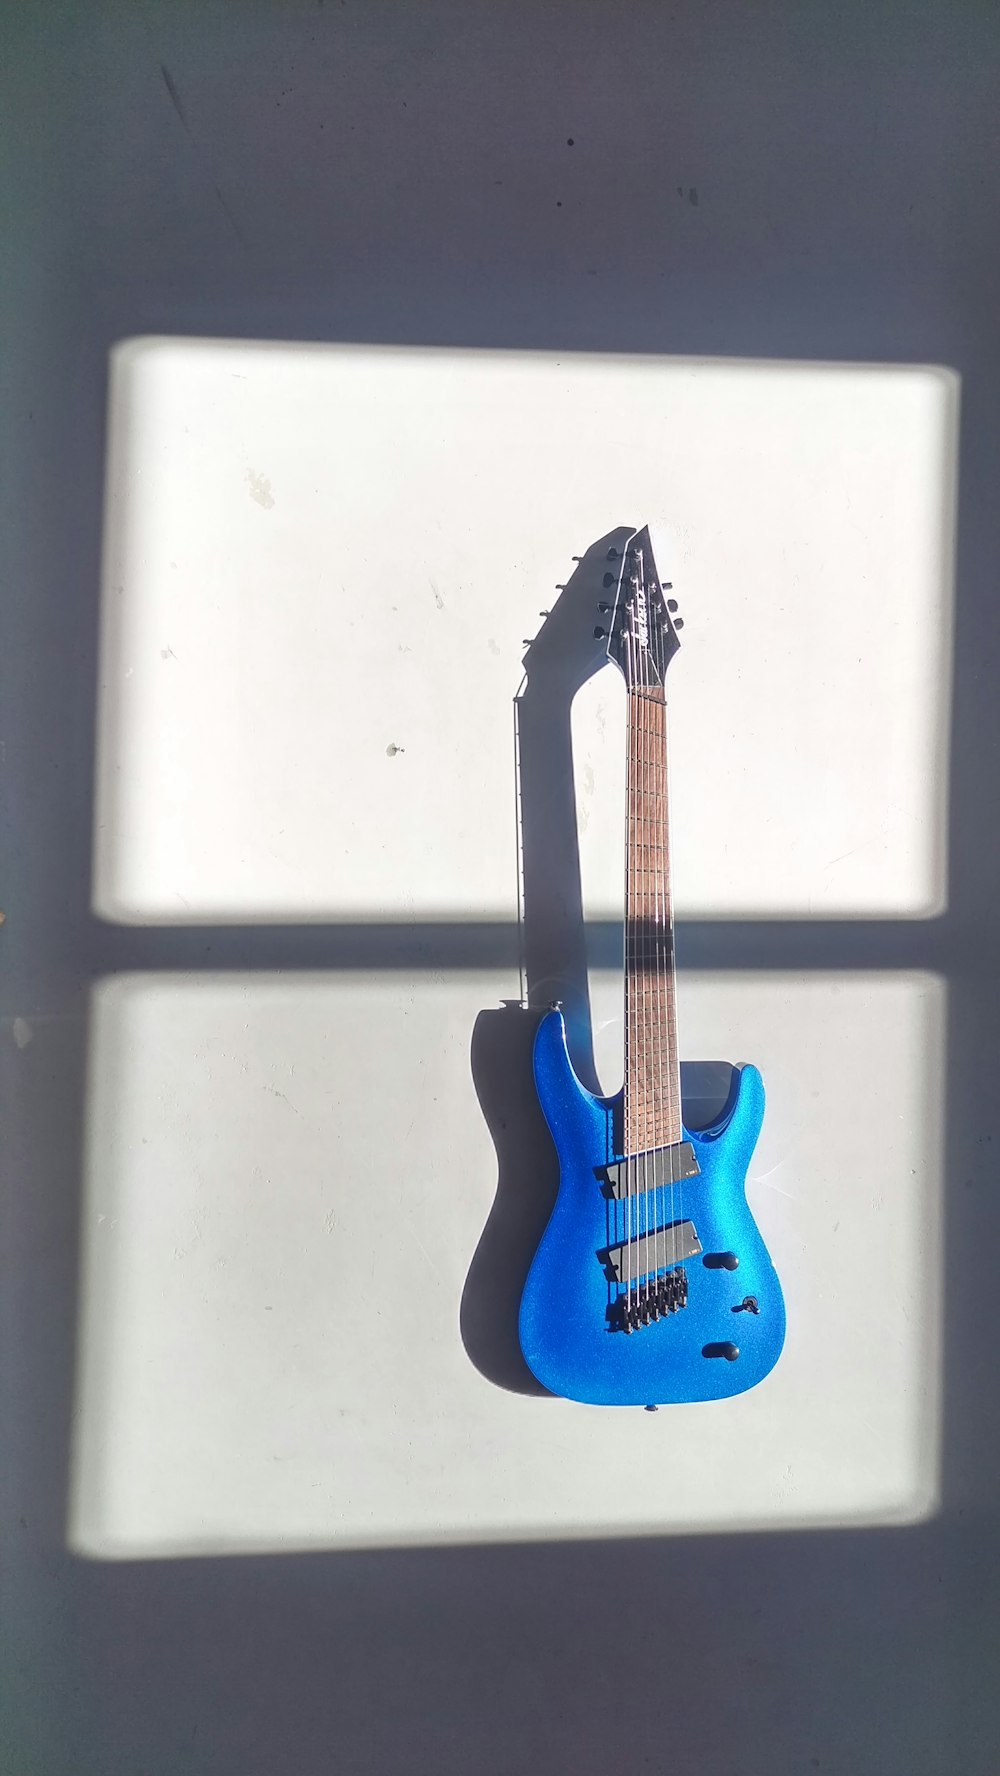 guitarra stratocaster azul e marrom